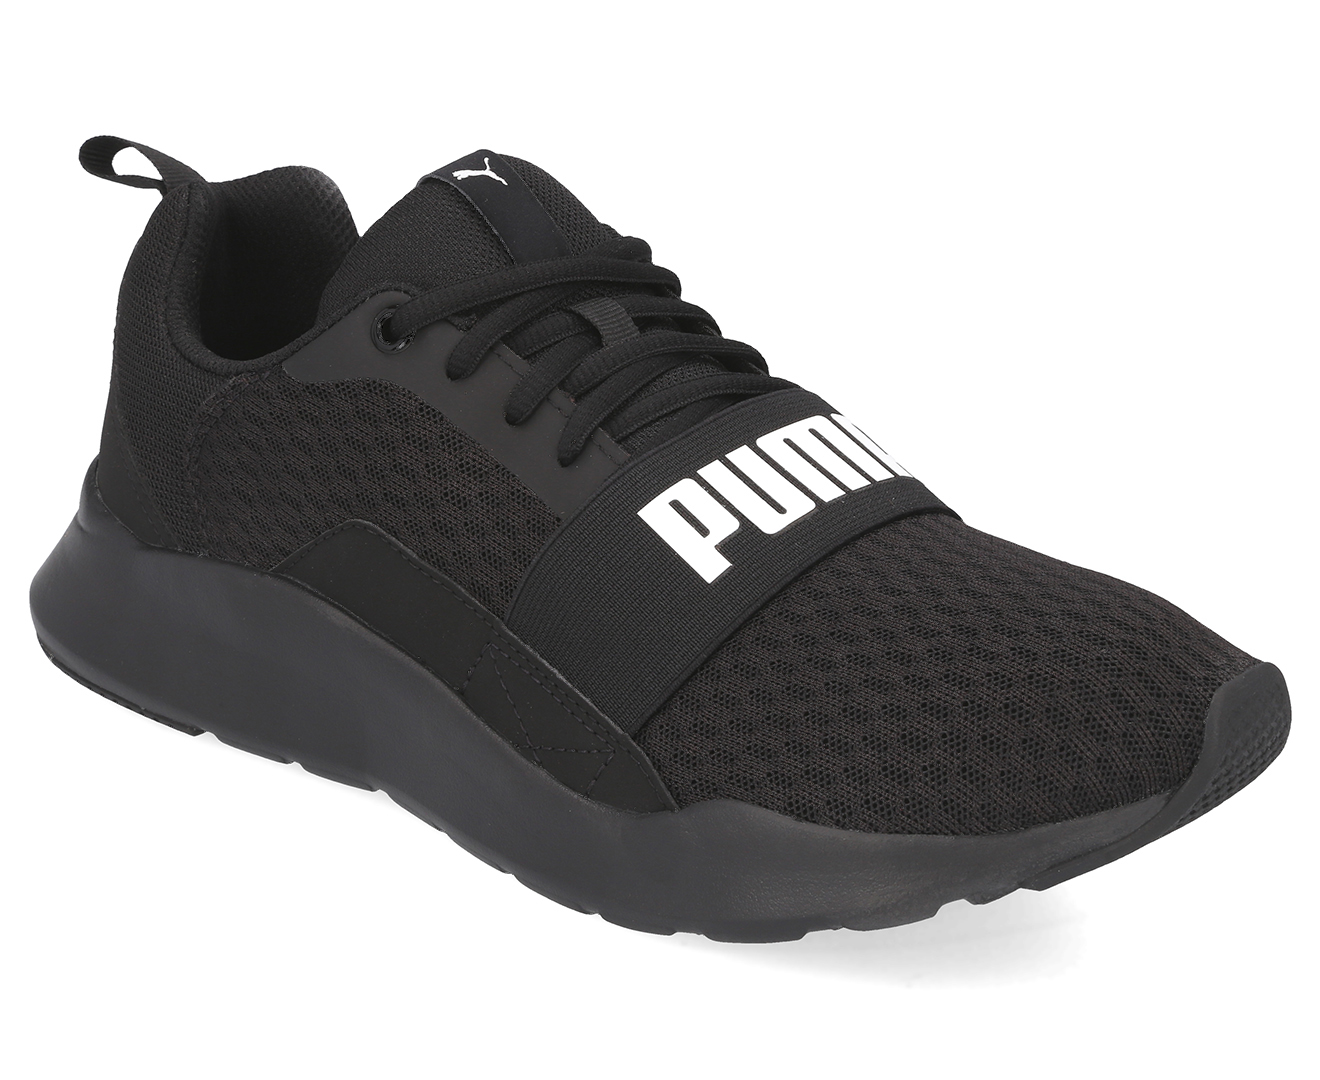 Puma Men's Wired Shoe - Black | Catch.com.au